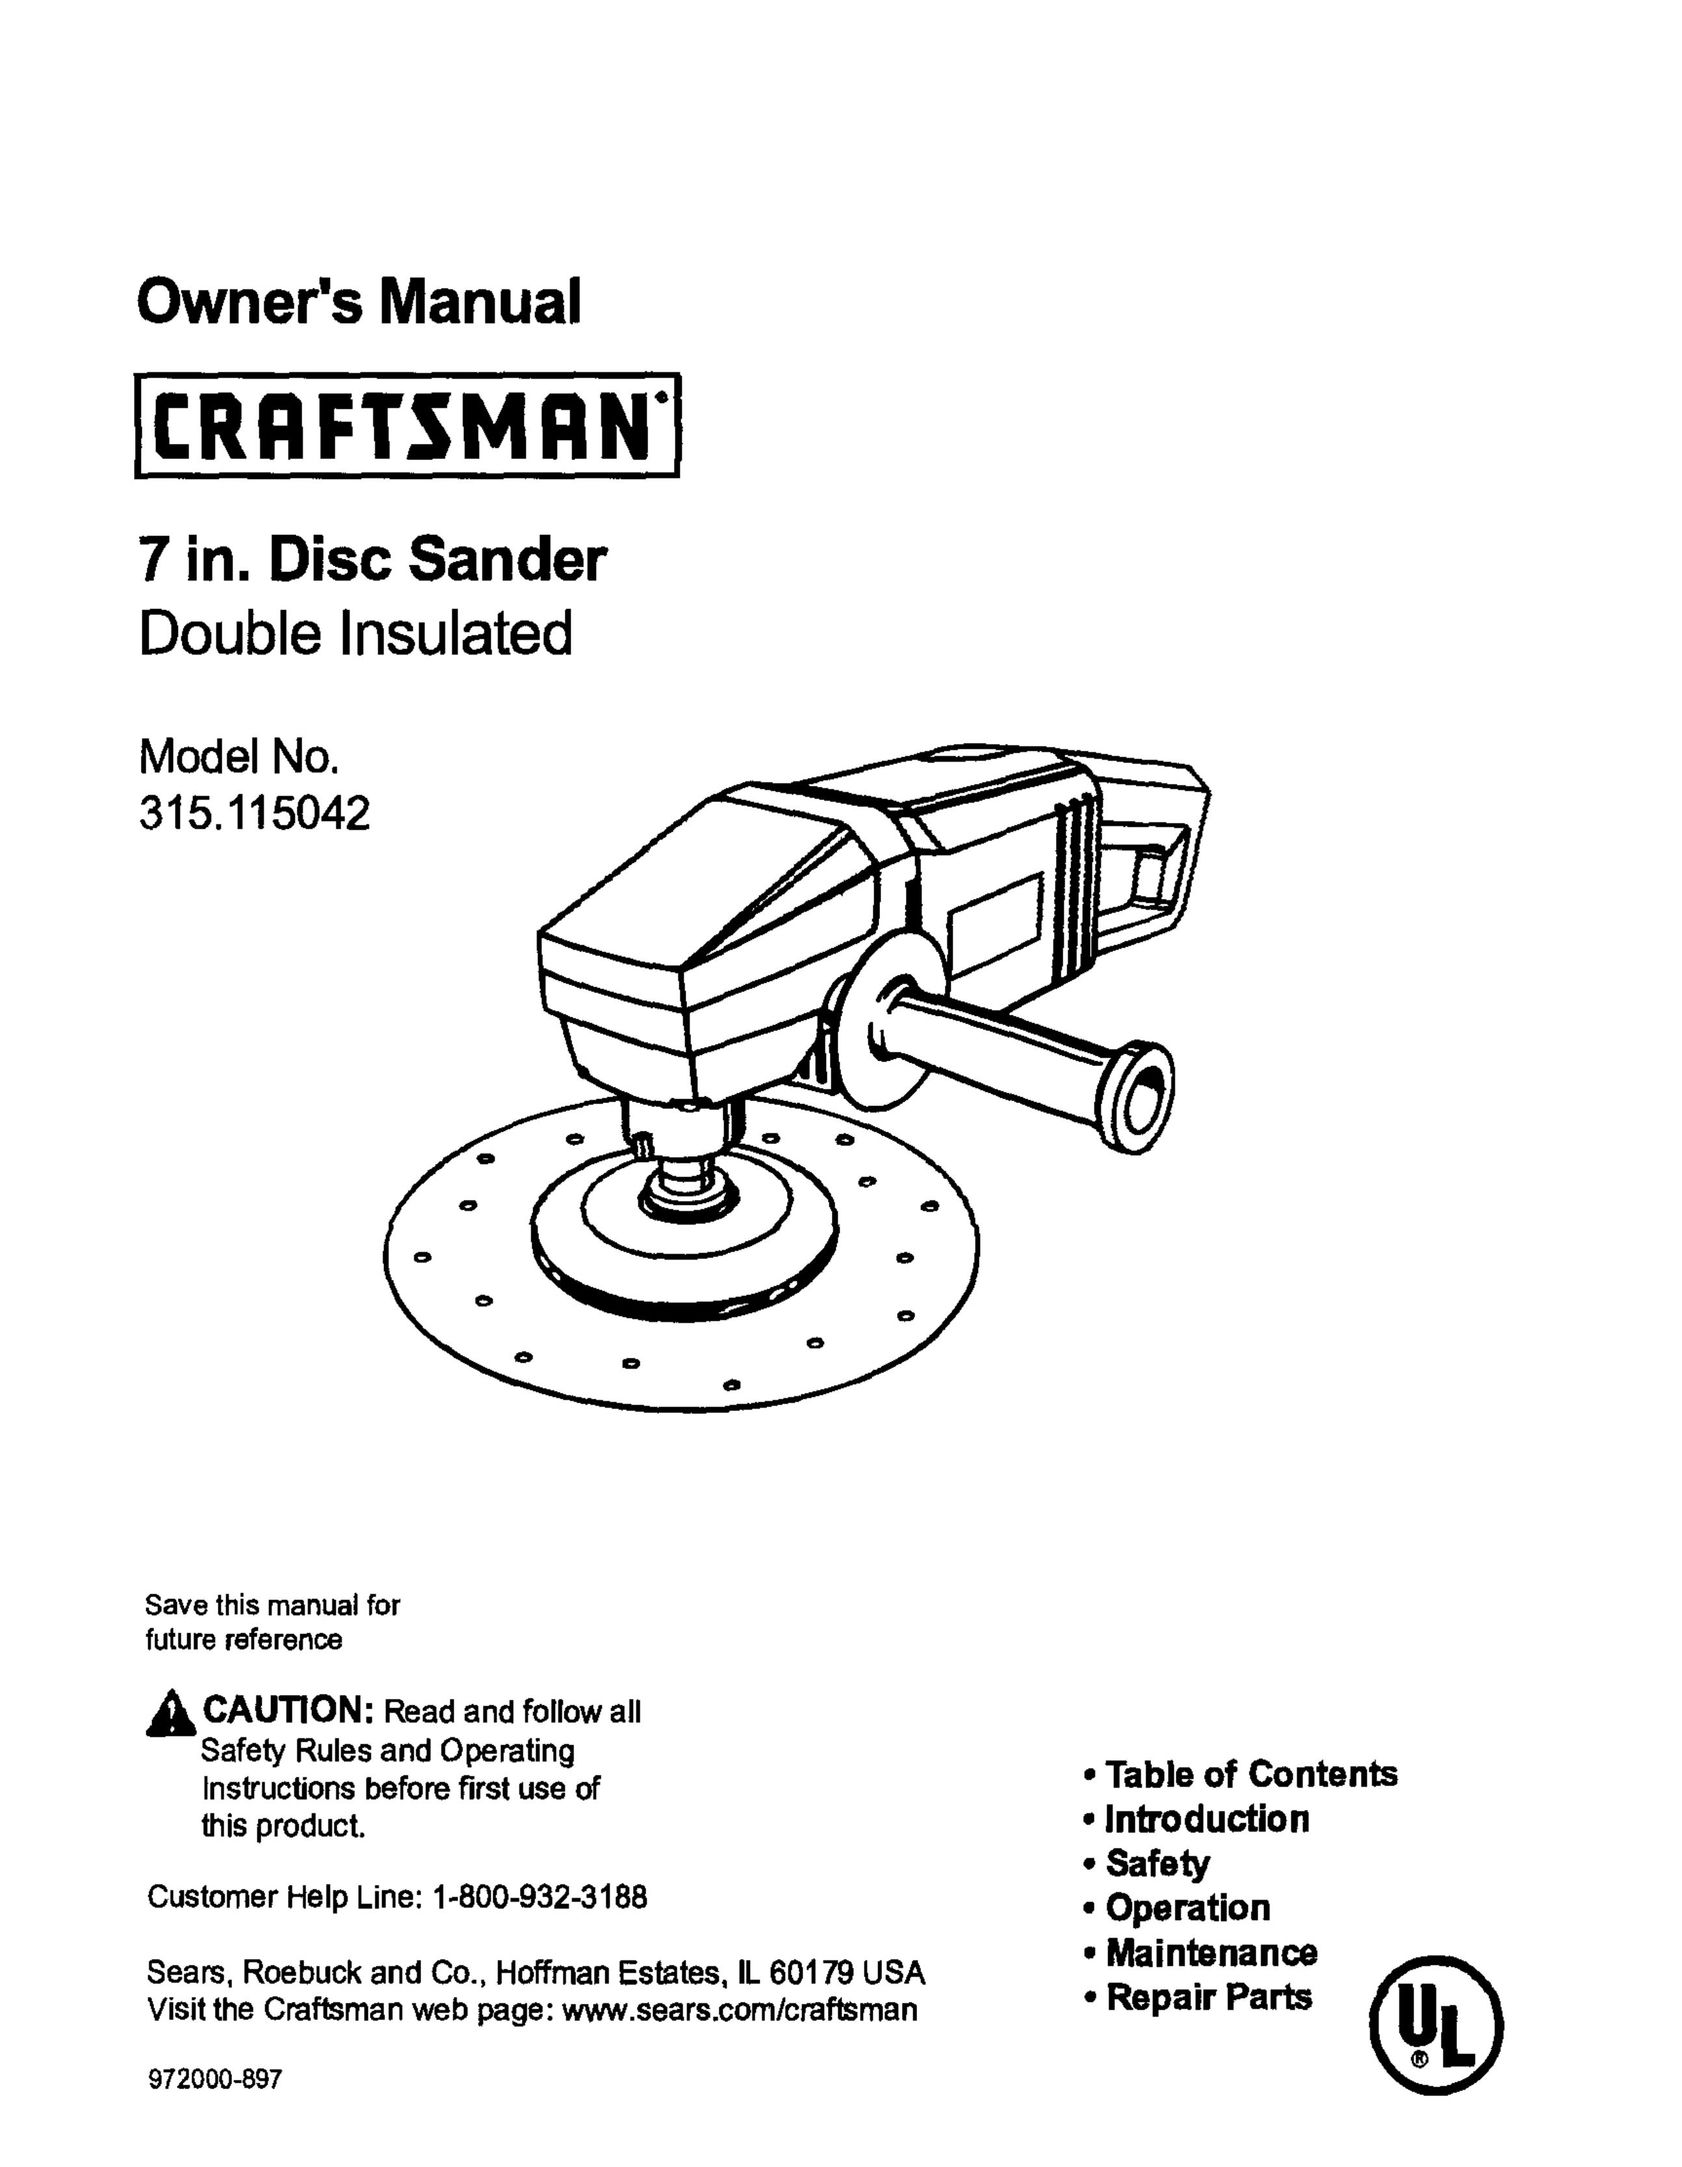 Craftsman 315.115042 Sander User Manual